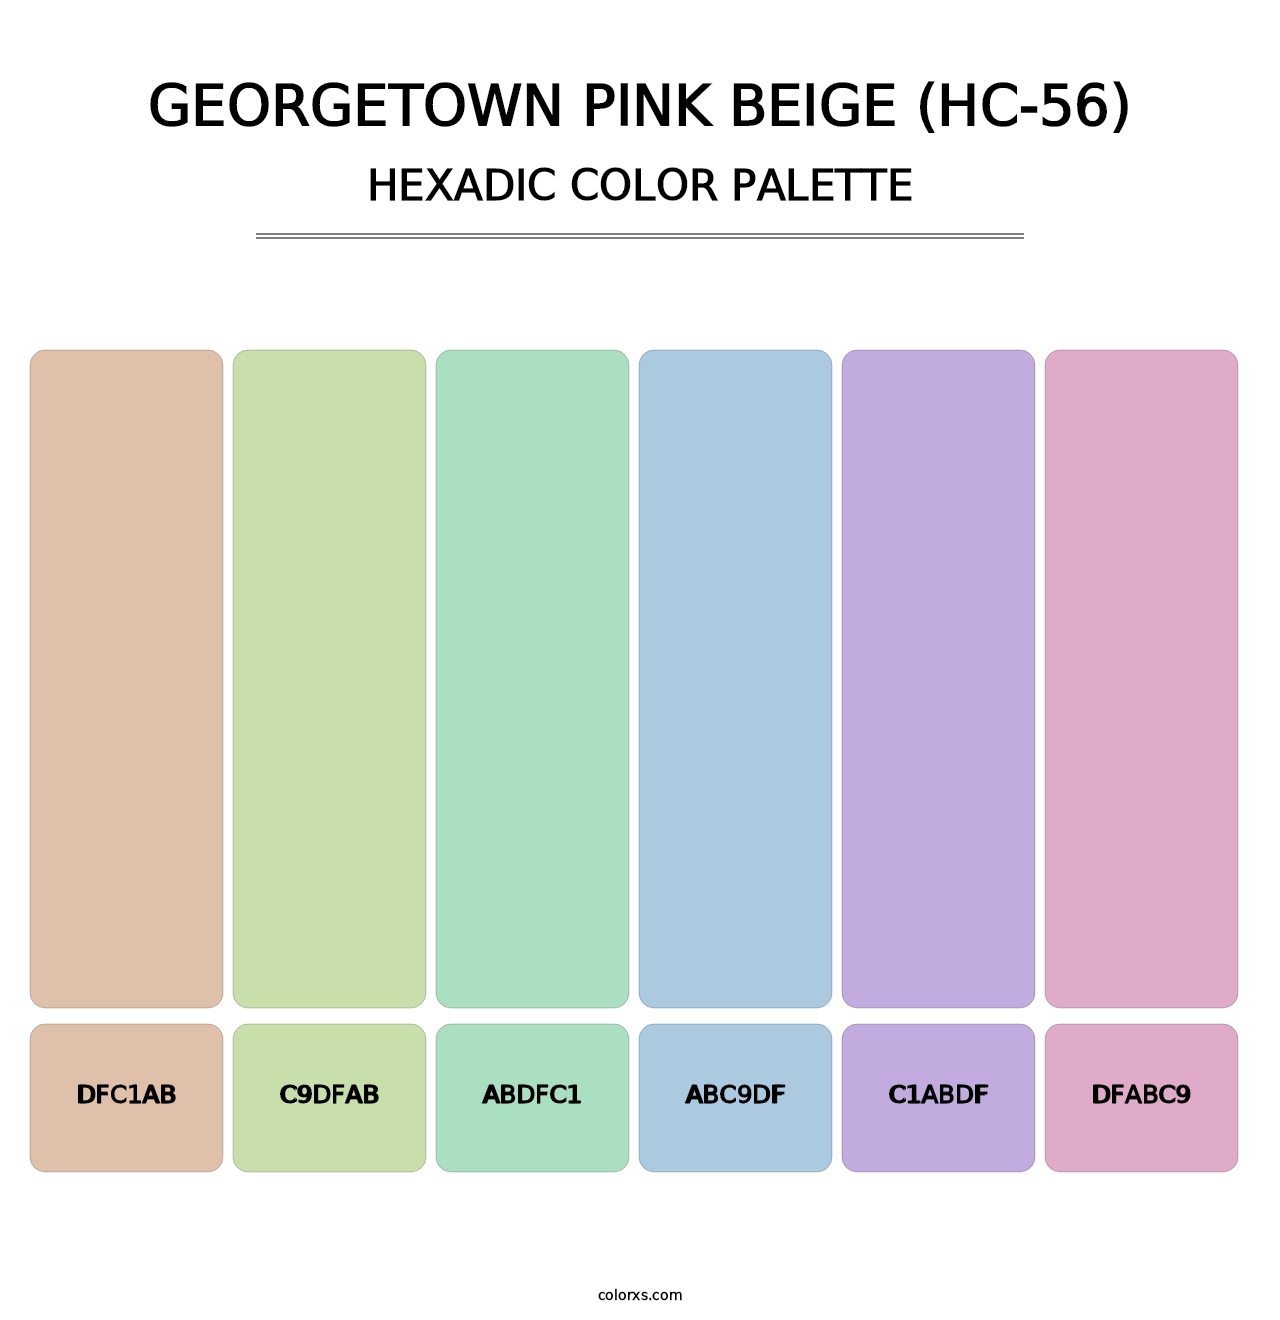 Georgetown Pink Beige (HC-56) - Hexadic Color Palette